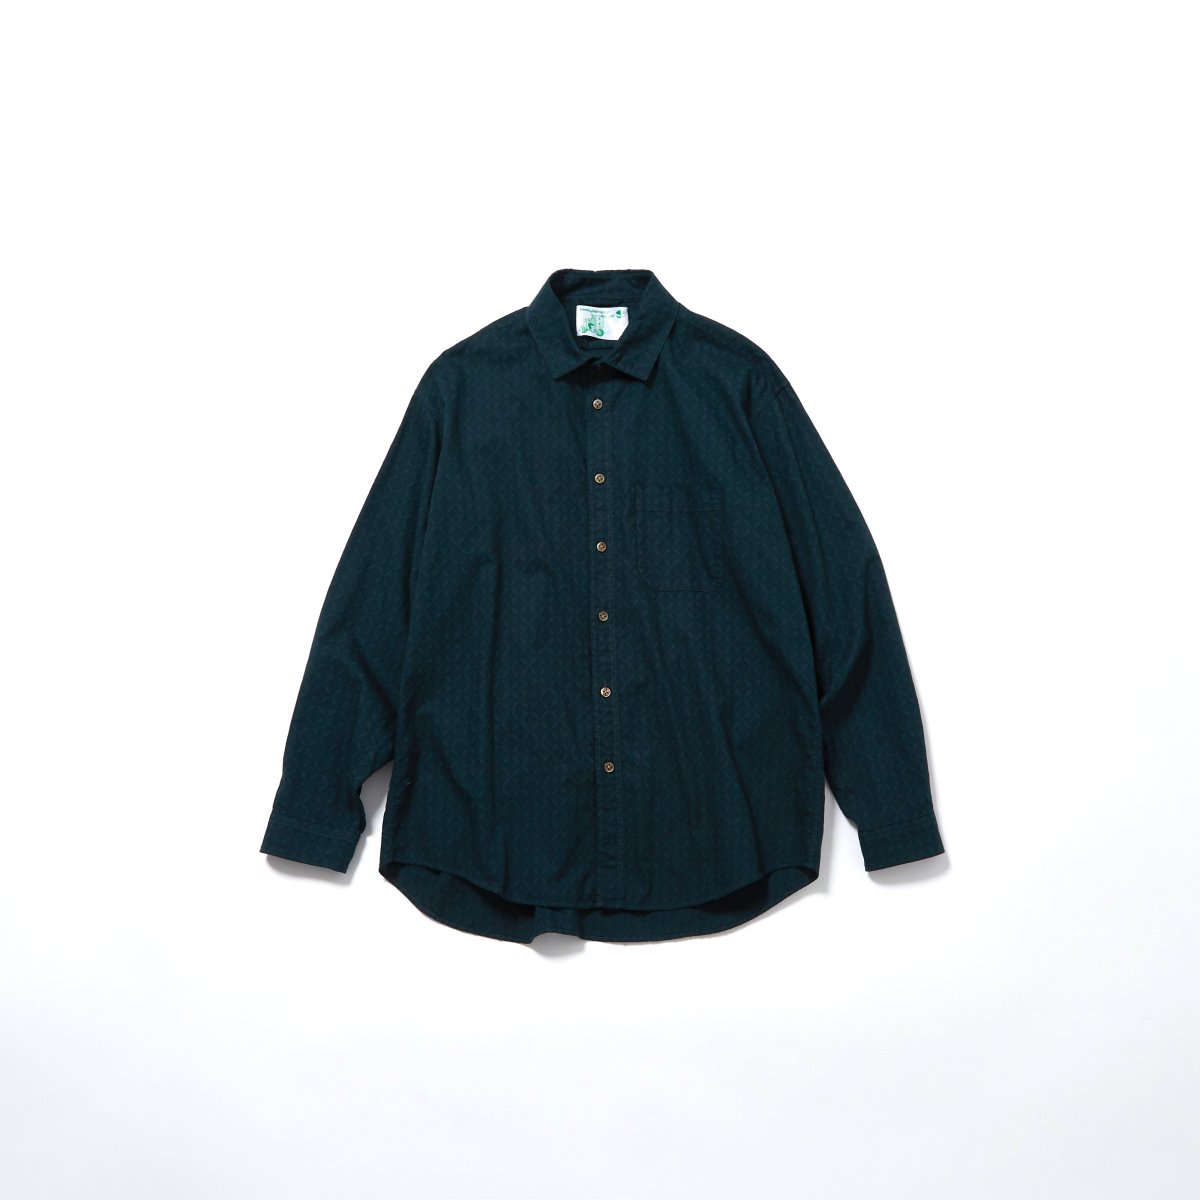 rajabrooke shirt jacket新作XL - アウター